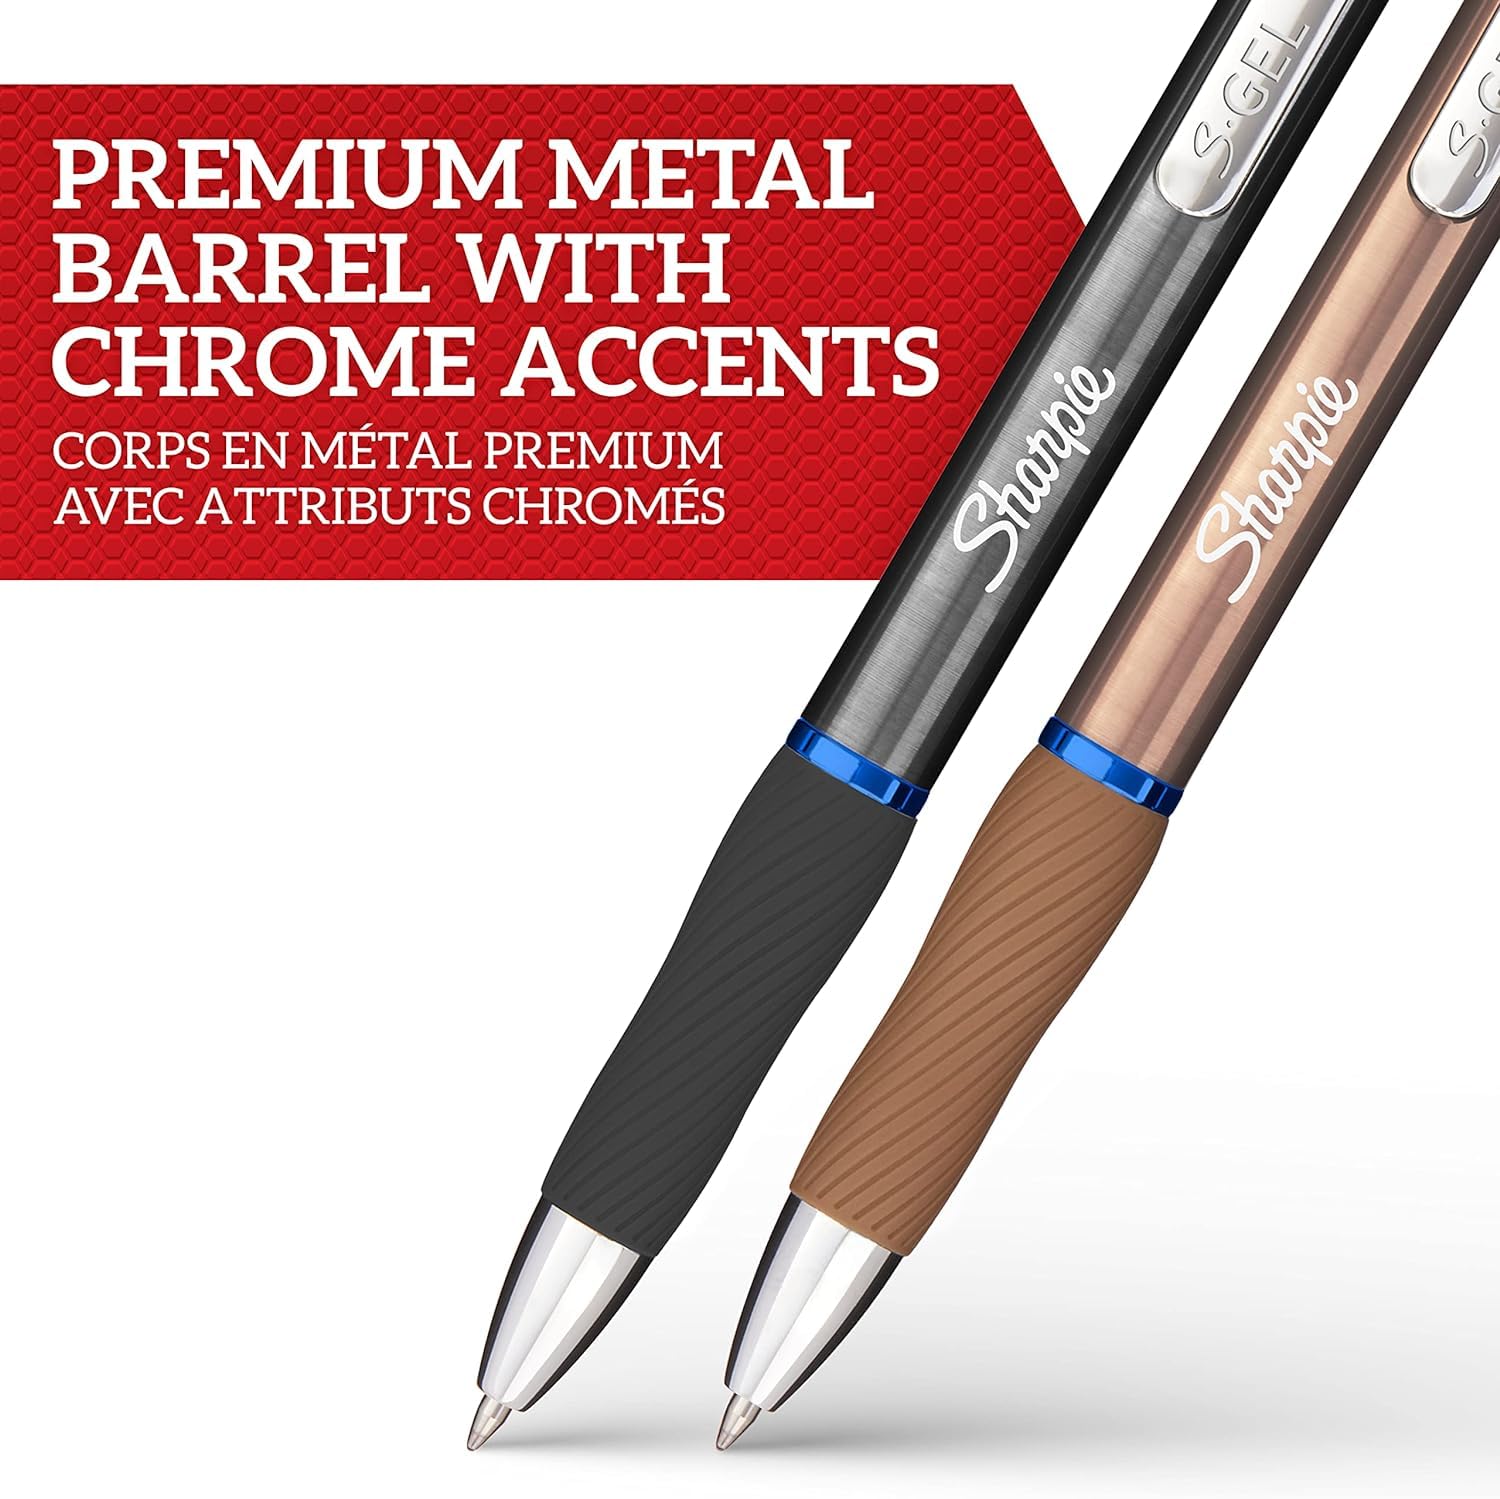 Sharpie S-Gel   Metal Gel Pens   Medium Point (0.7mm)   Steel Grey & Rose Gold   Blue Ink   2 Pens & 2 Gel Pen Refills